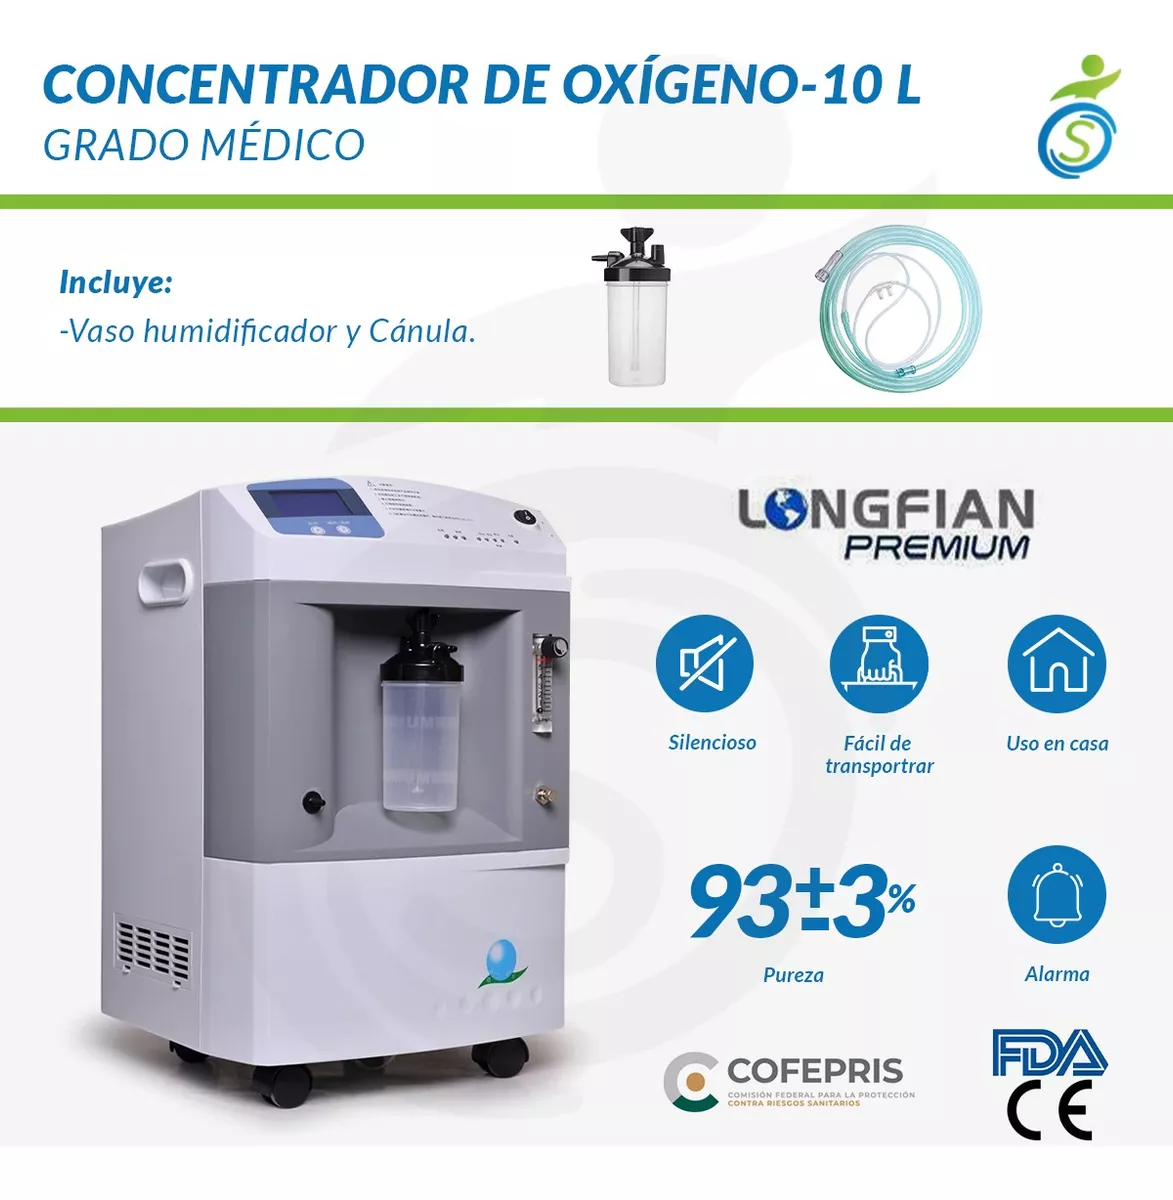 Concentrador de Oxígeno 10 Lts Grado Medico 24/7 Cofrepris